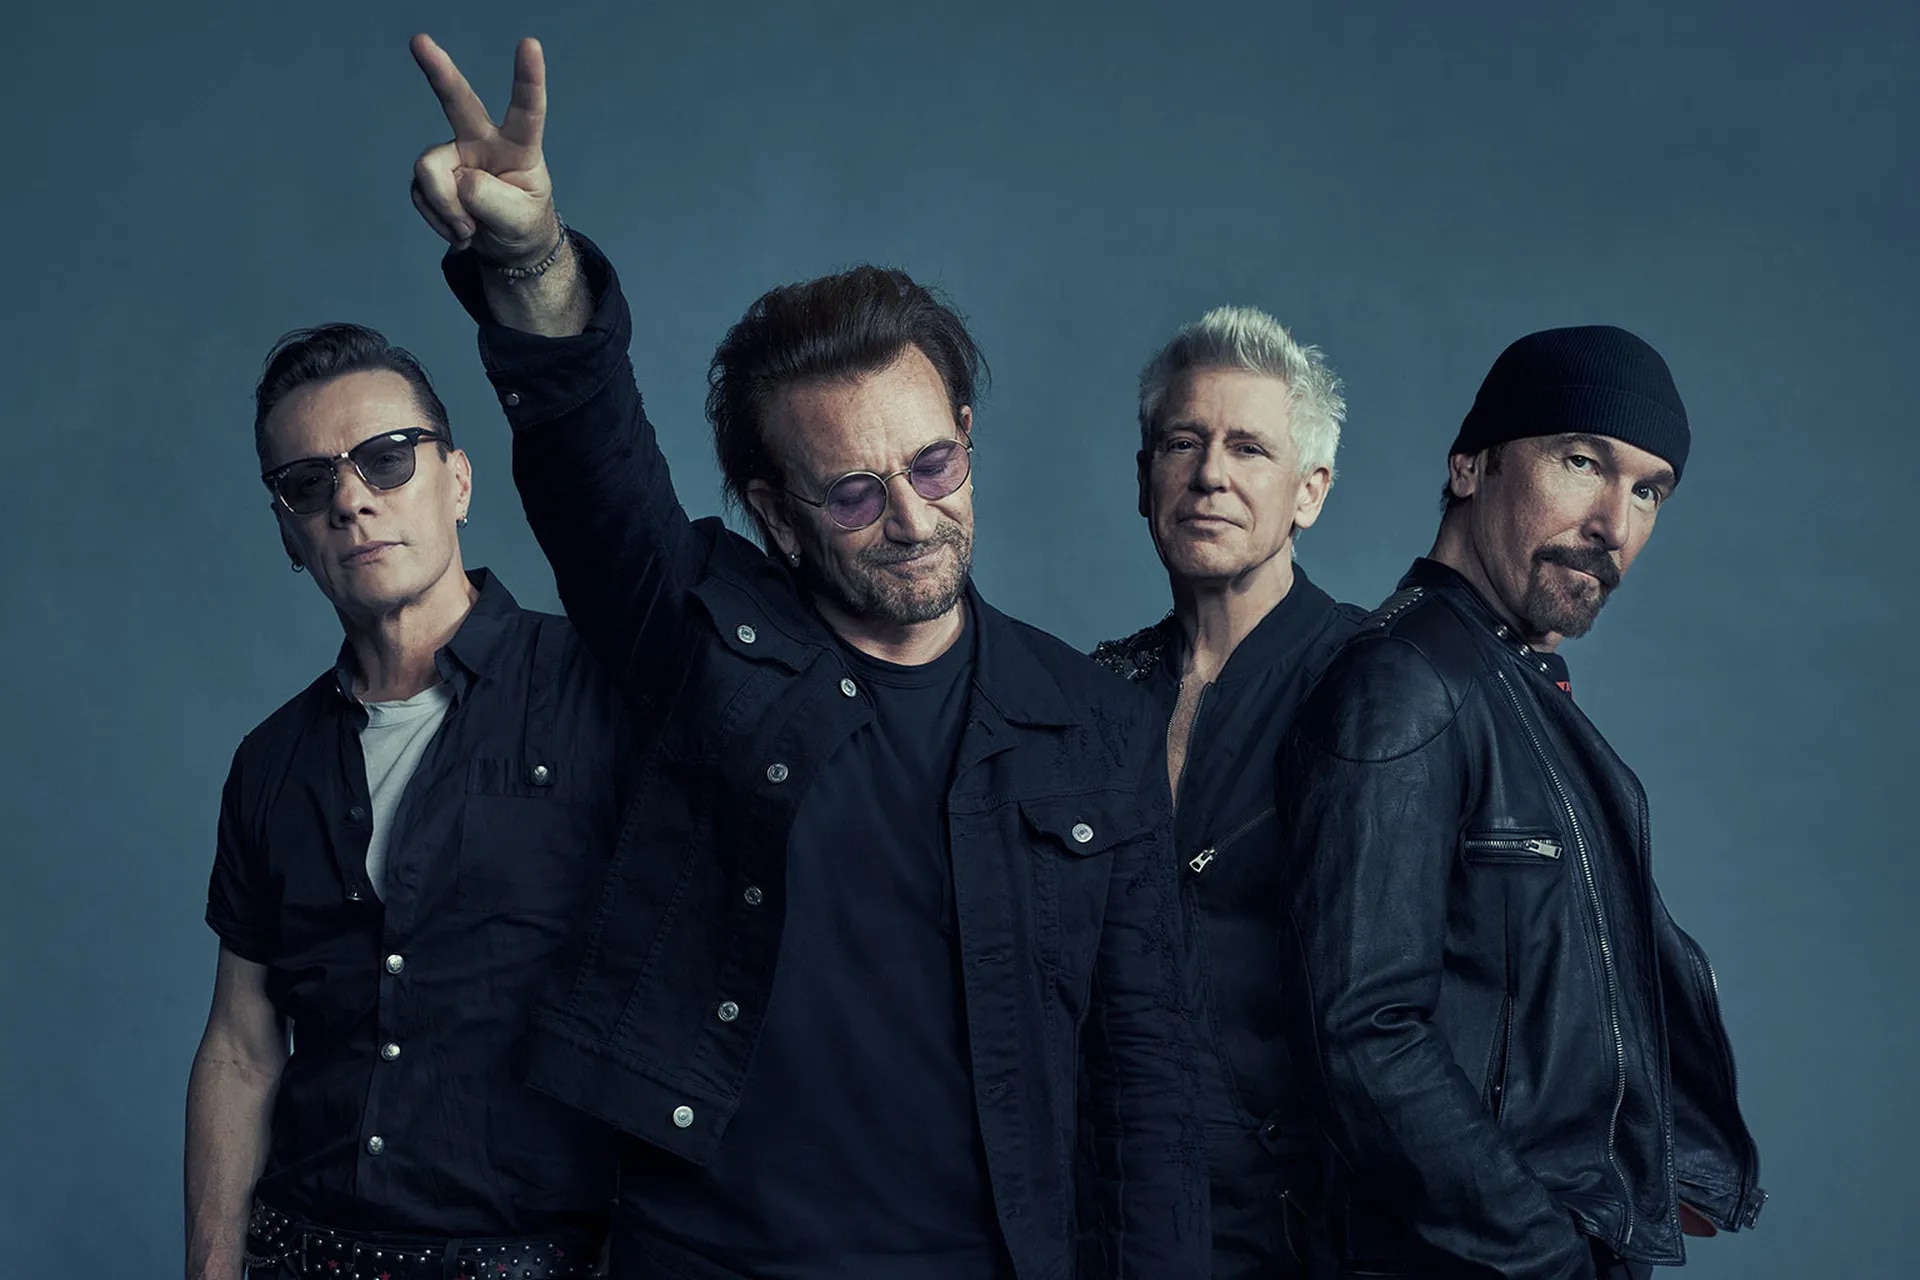 About U2